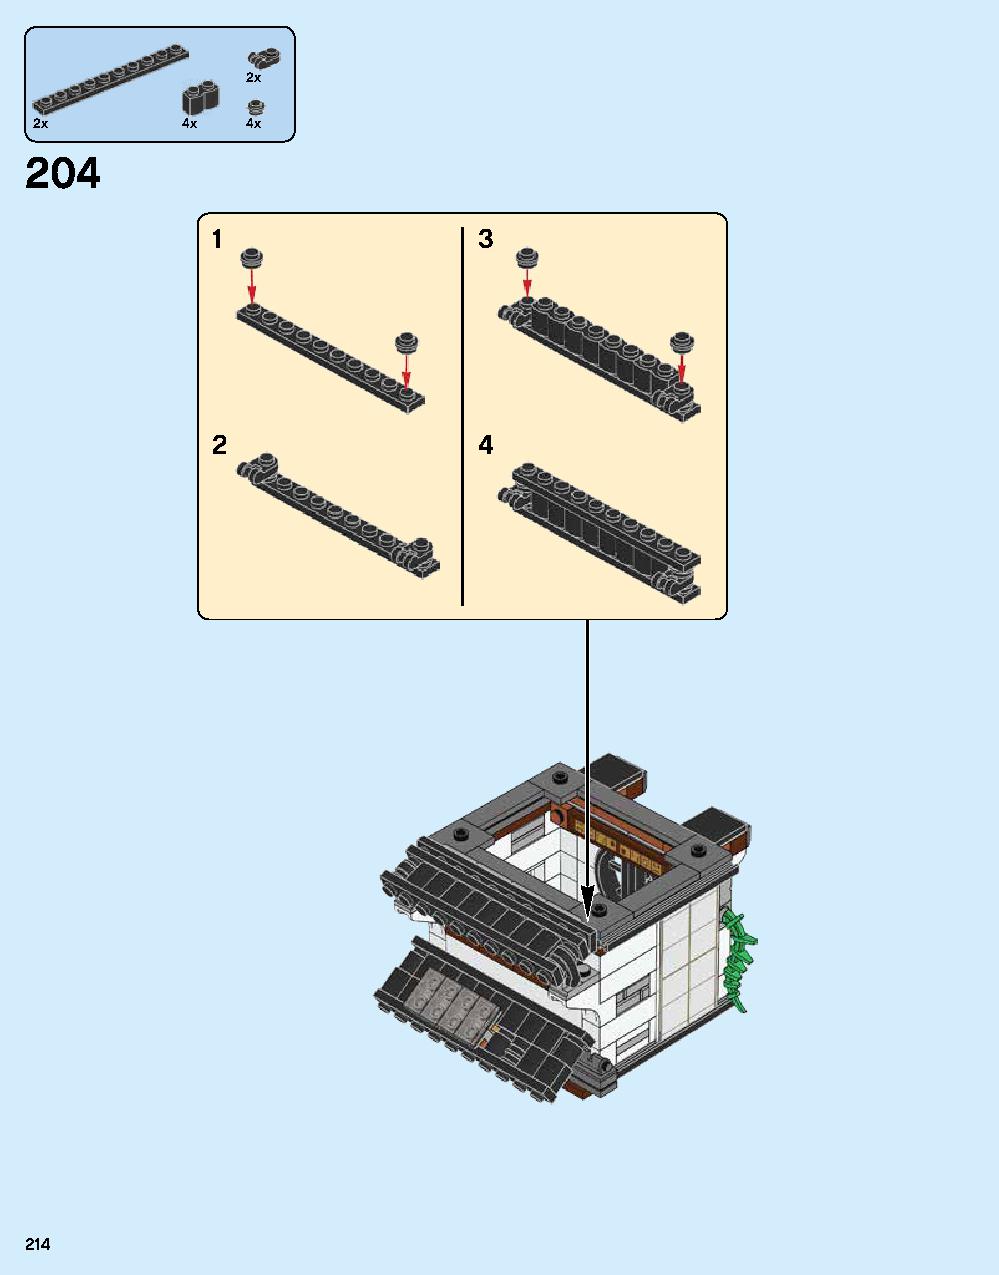 ニンジャゴー シティ 70620 レゴの商品情報 レゴの説明書・組立方法 214 page